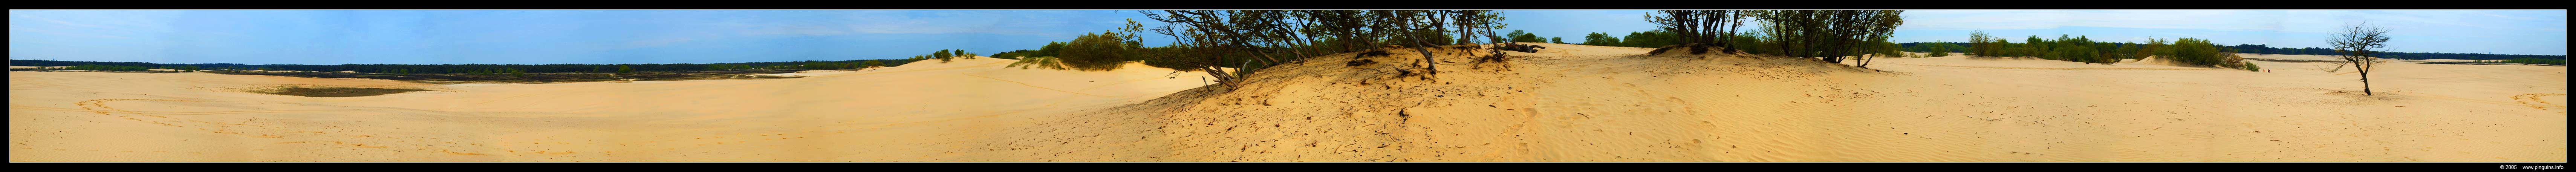 Duinen    dunes panorama
Trefwoorden: Loonse Drunense Duinen dunes